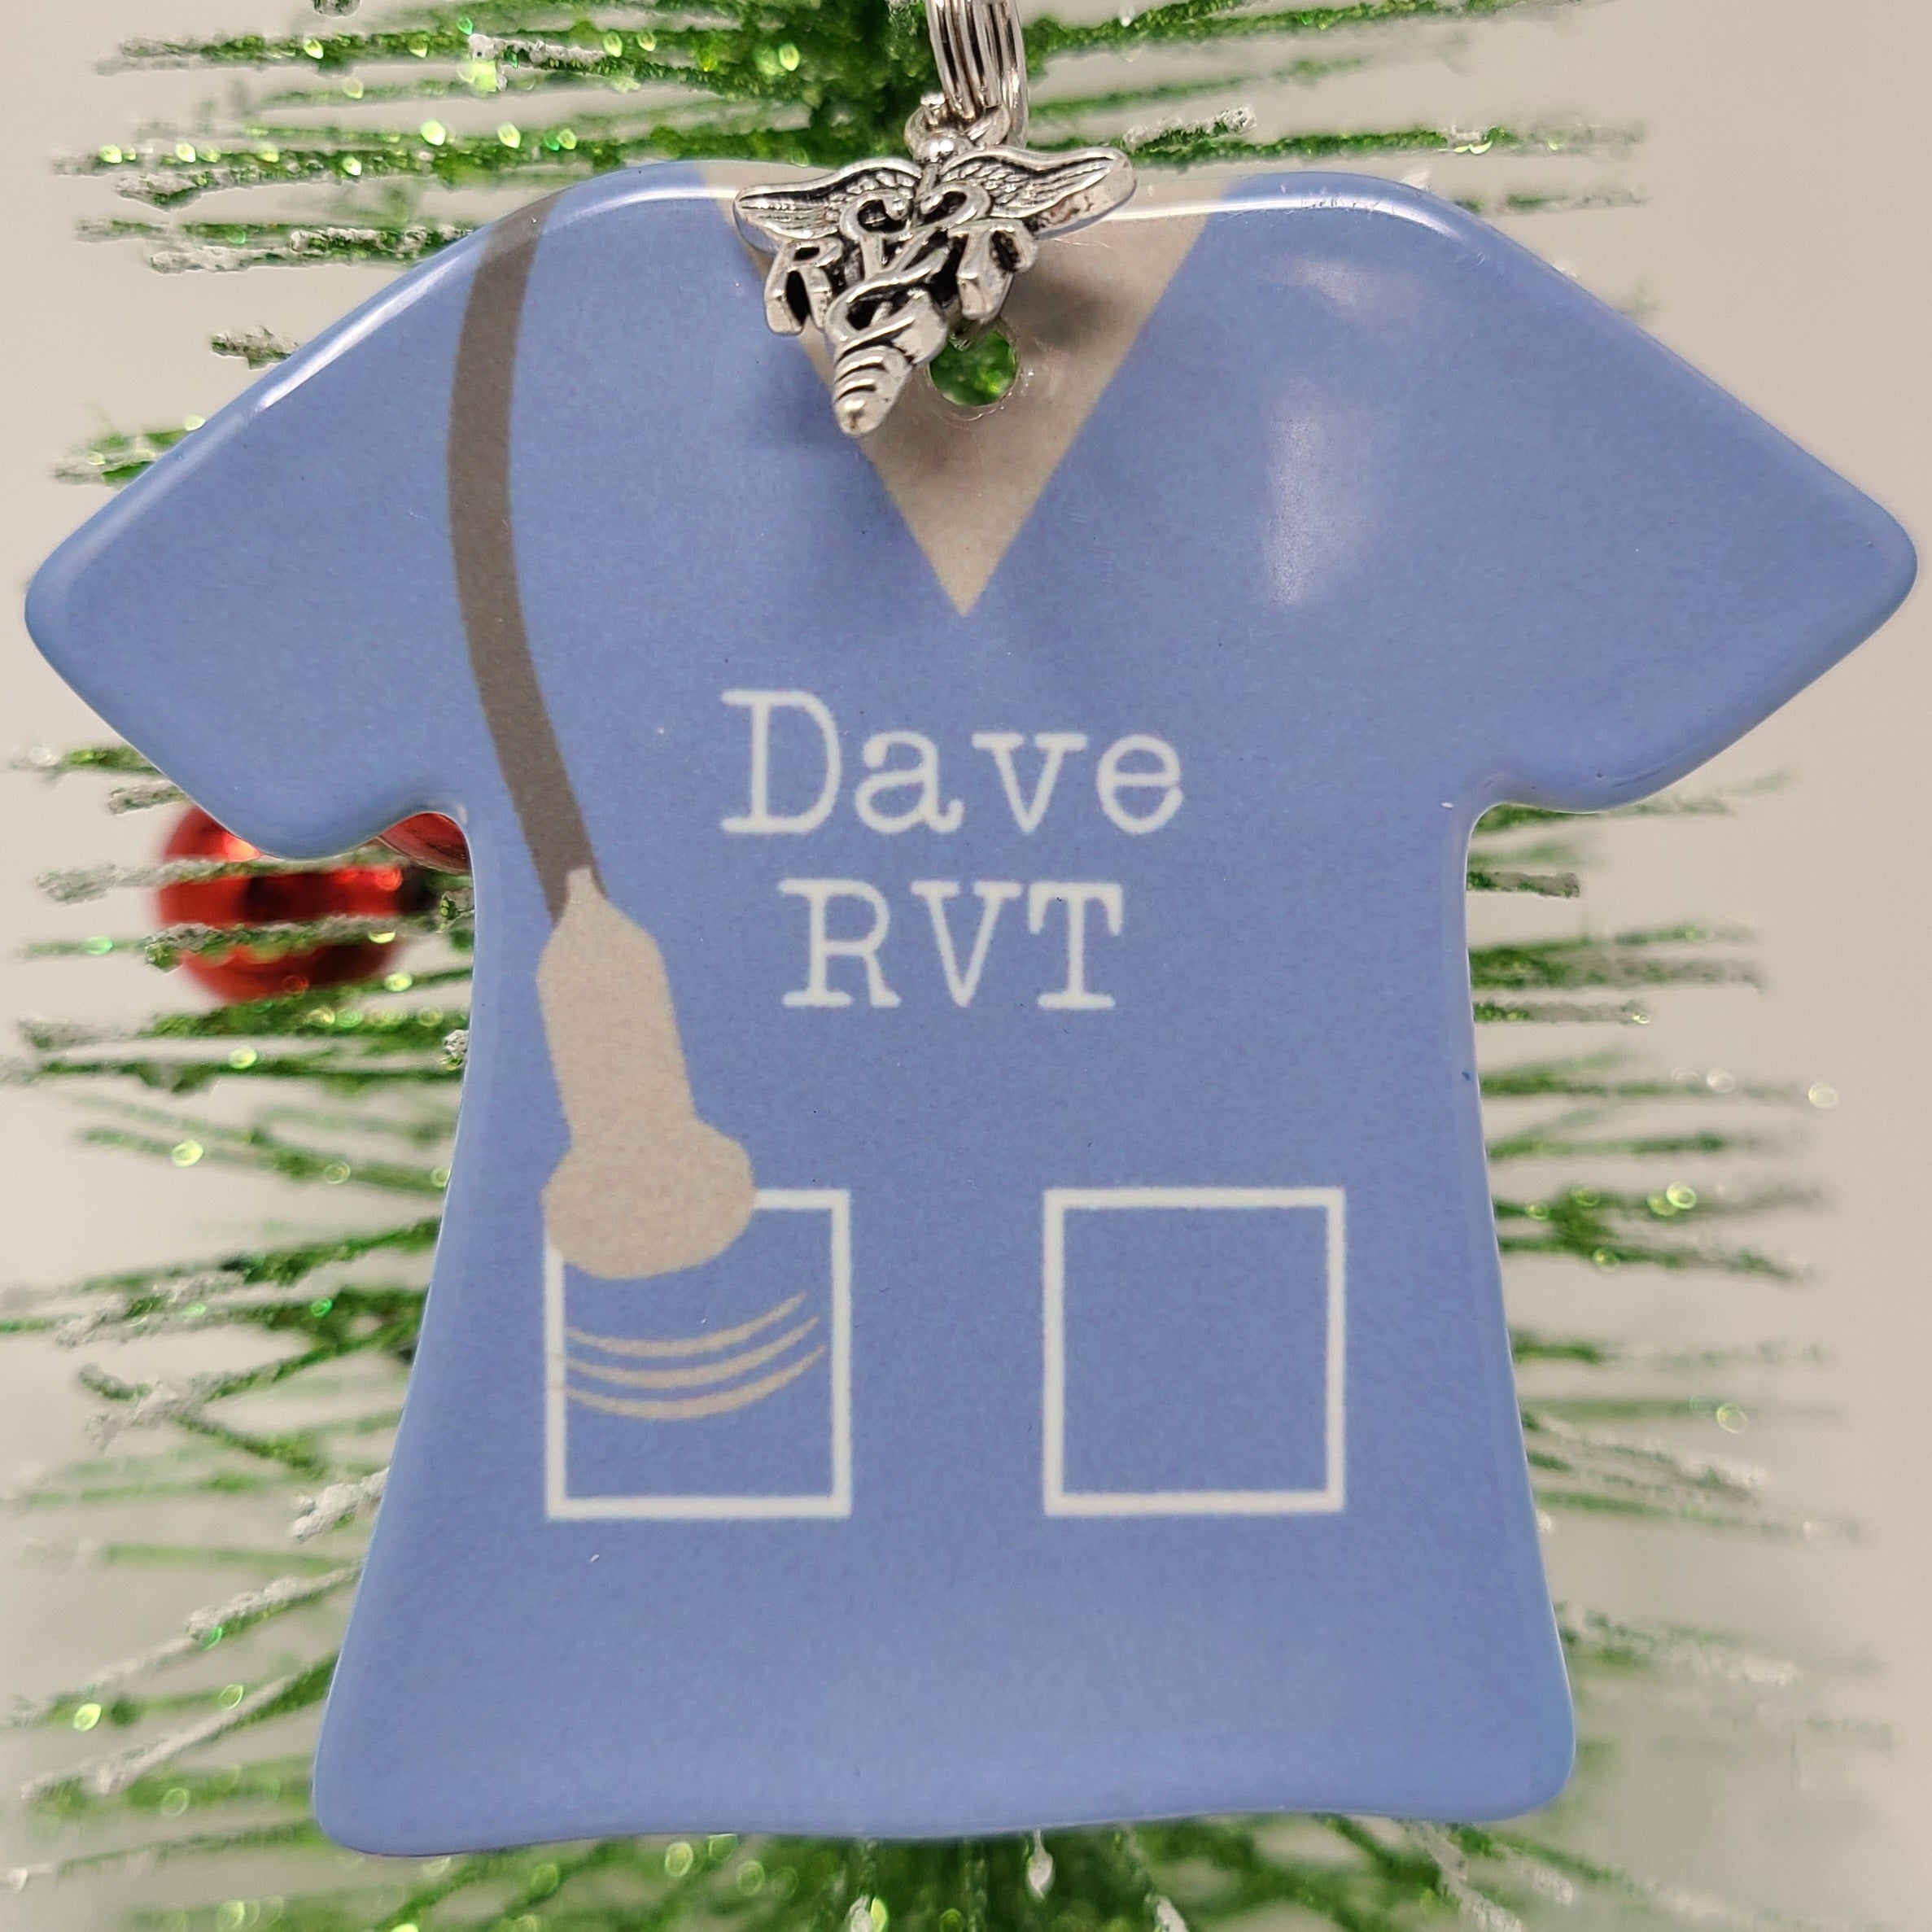 Vascular tech ornament, gift for RVT,  RVT ornament, personalized RVT ornament, Scrub top ornament